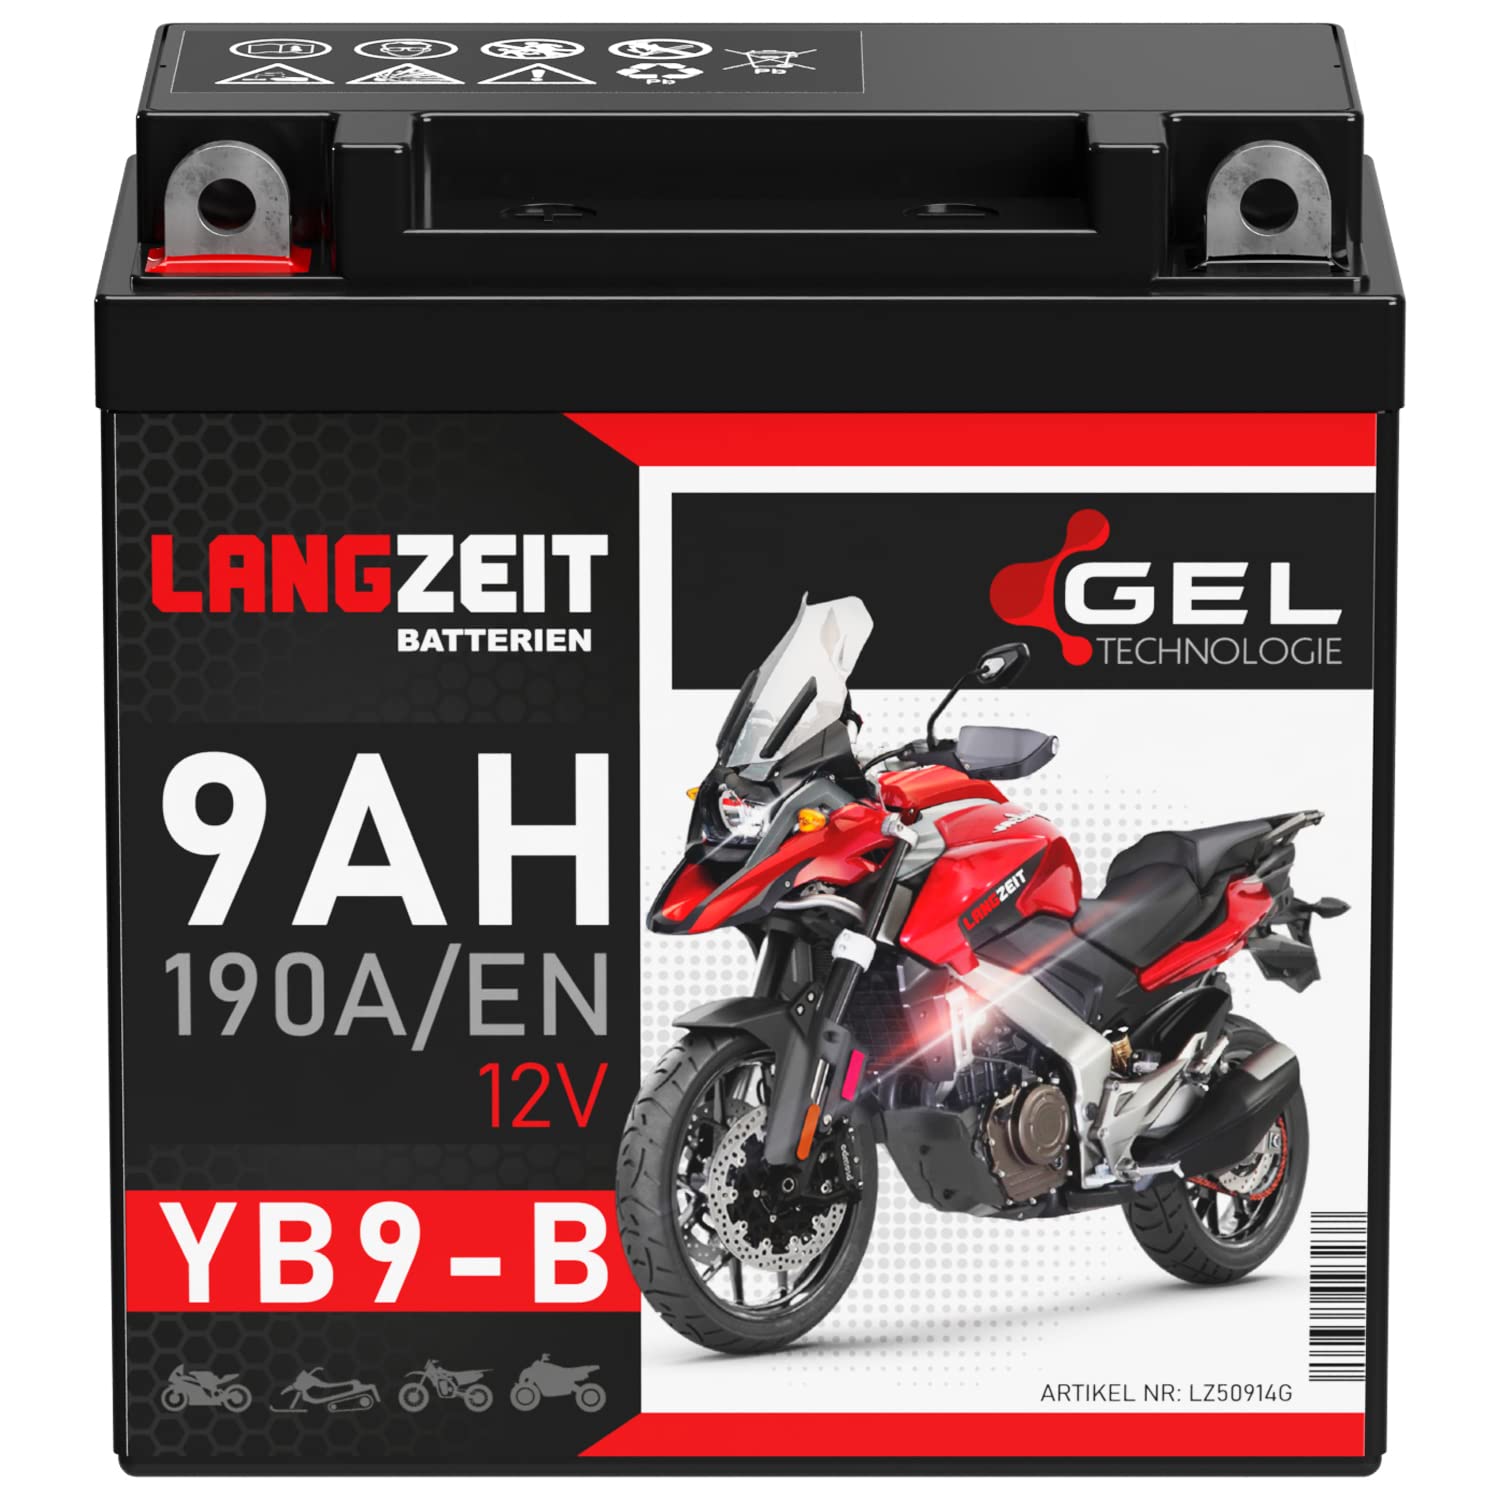 LANGZEIT YB9-B Motorradbatterie 12V 9Ah 190A/EN Gel Batterie 12V doppelte Lebensdauer entspricht YB9-BS CB9-B 50914 GM9Z 12N9-4B-1 vorgeladen auslaufsicher wartungsfrei ersetzt 8Ah von LANGZEIT Batterien